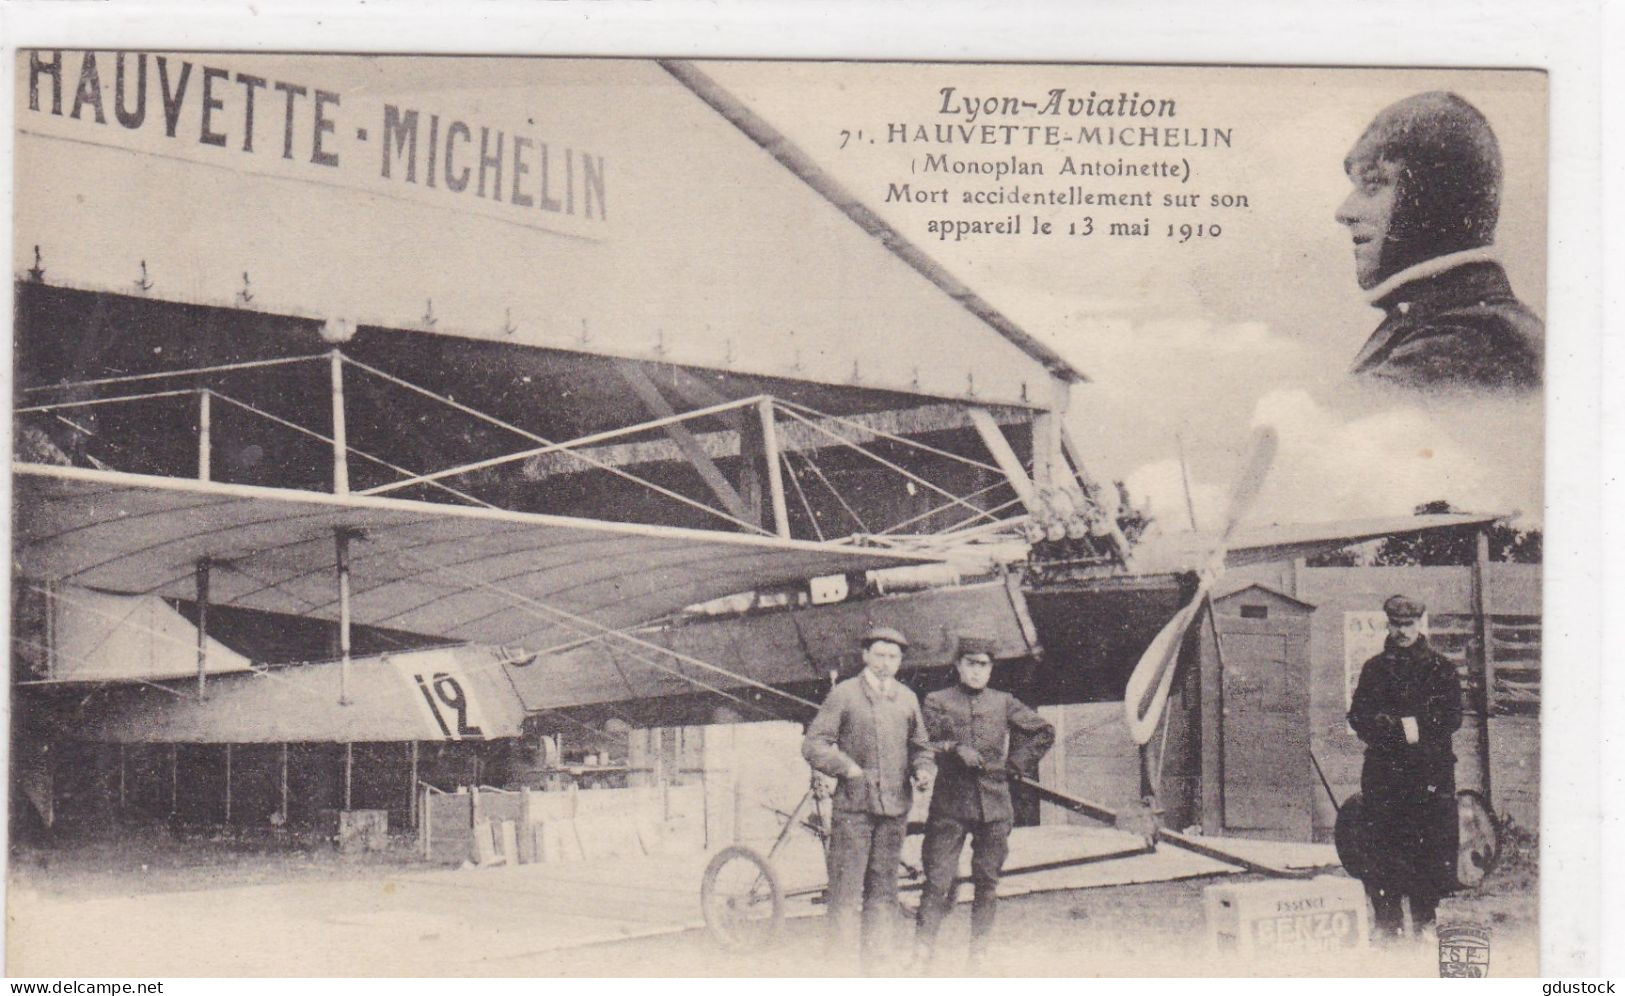 Lyon-Aviation - Hauvette-Michelin (Monoplan Antoinette) Mort Accidentellement Sur Son Appareil Le 13 Mai 1910 - Aviateurs